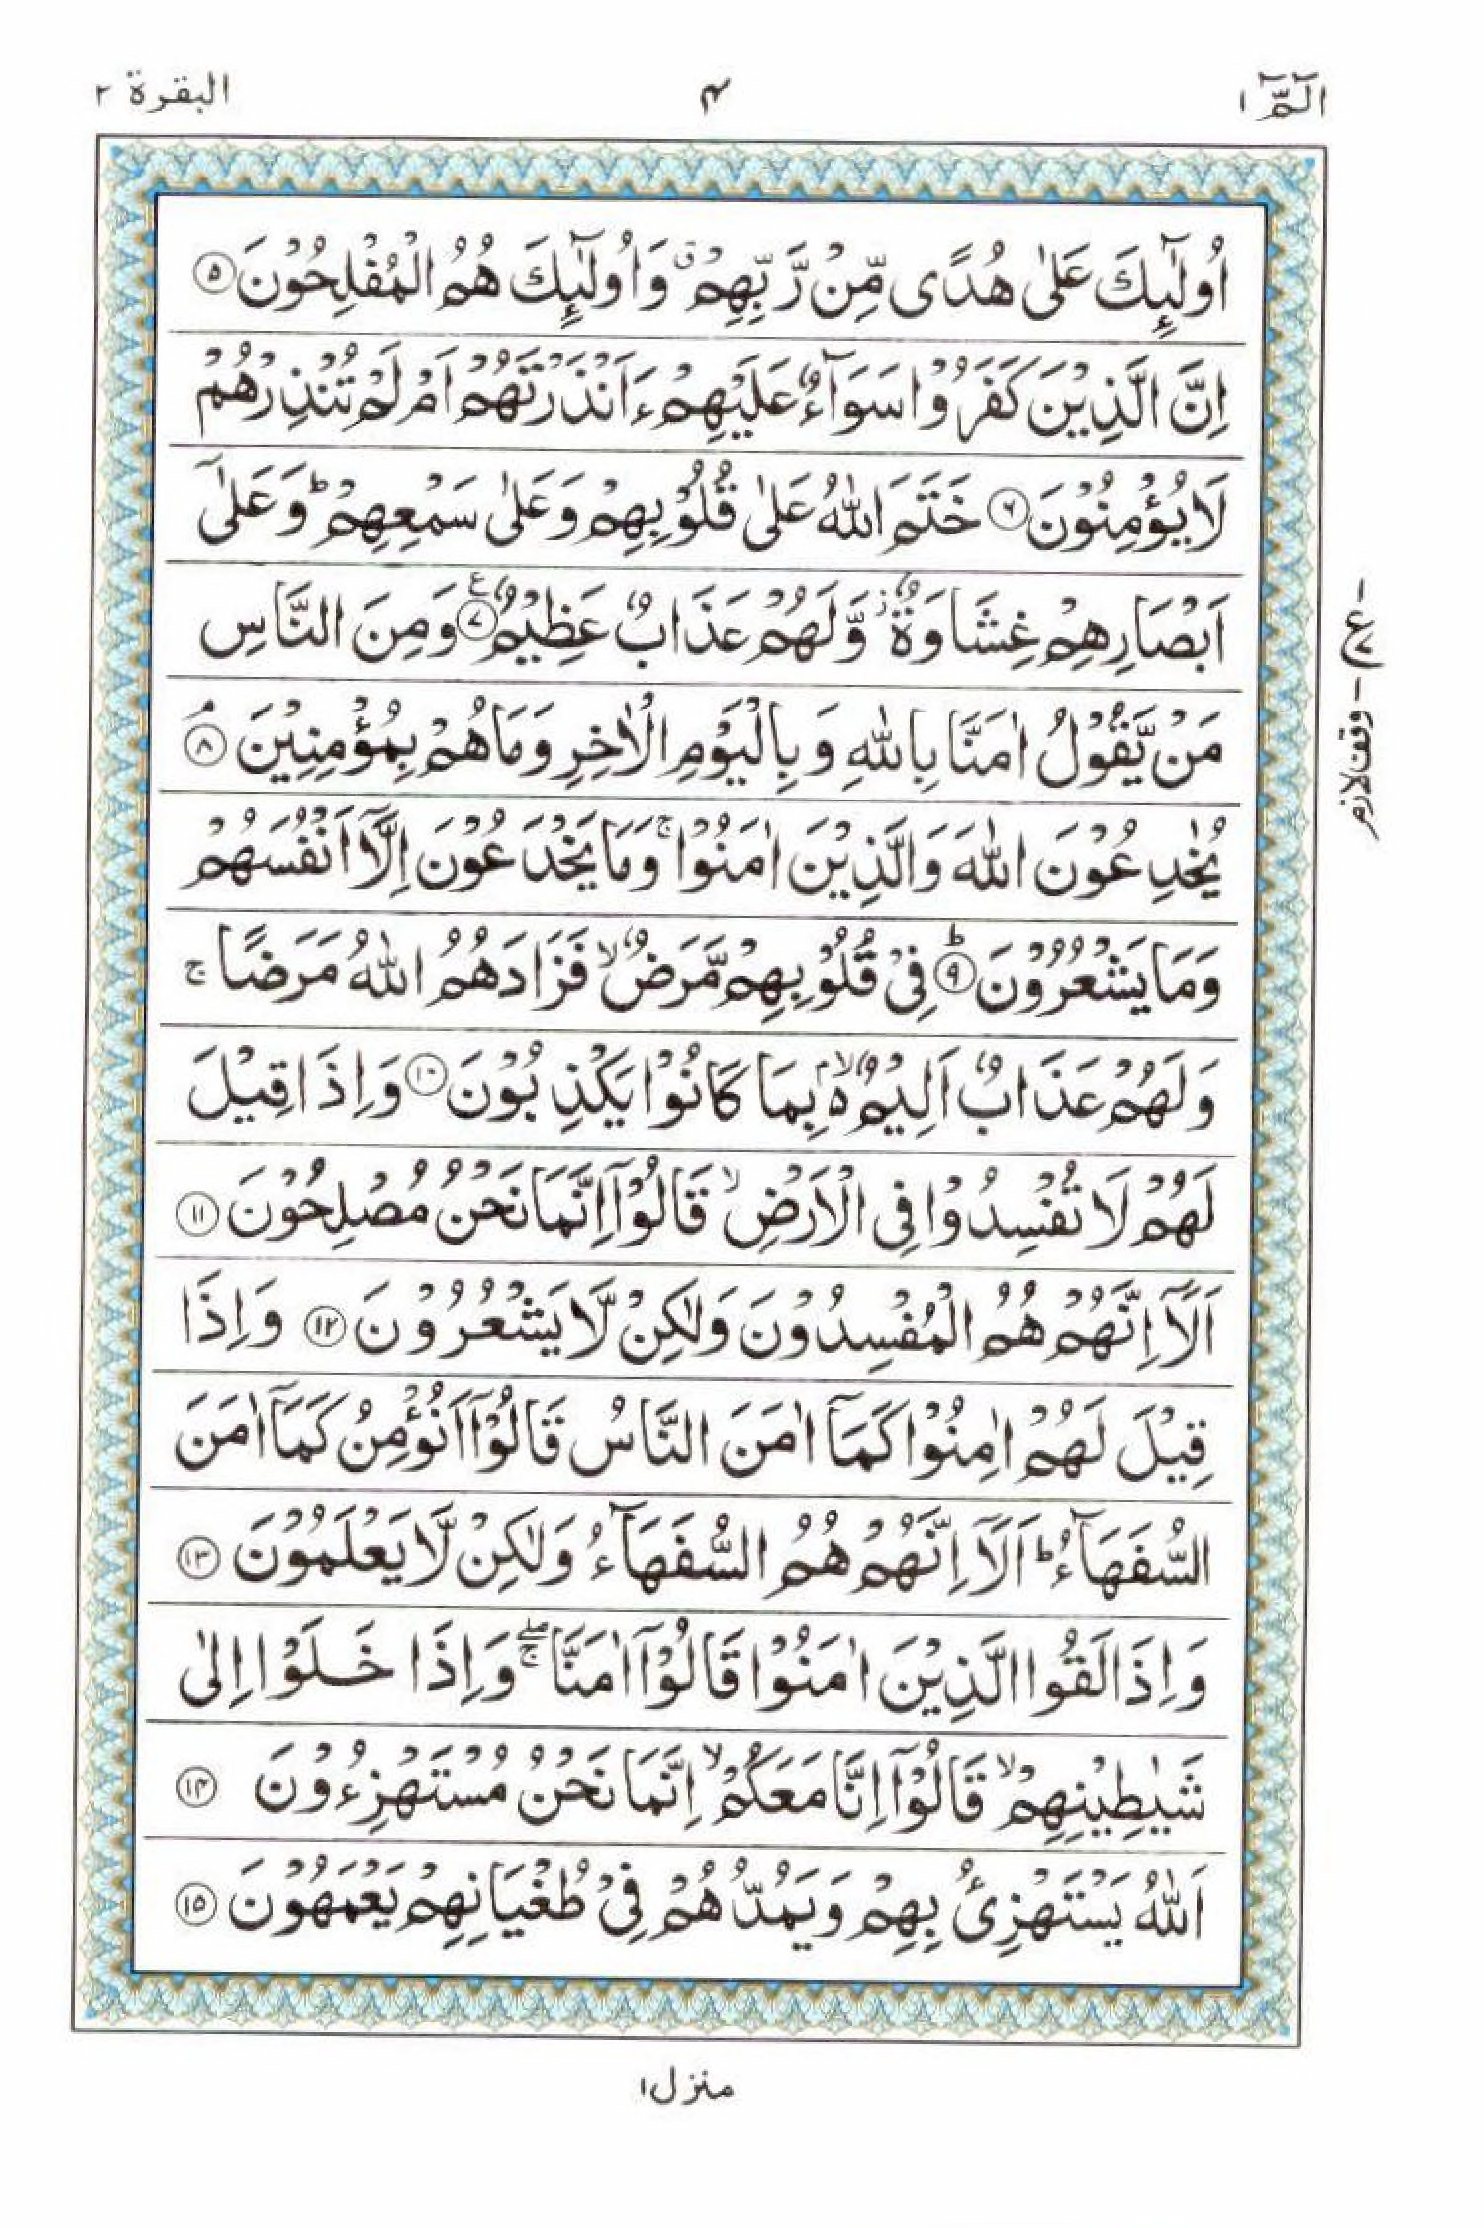 Read 15 Lines Al Quran Part 1 Page No 4, Practice Quran